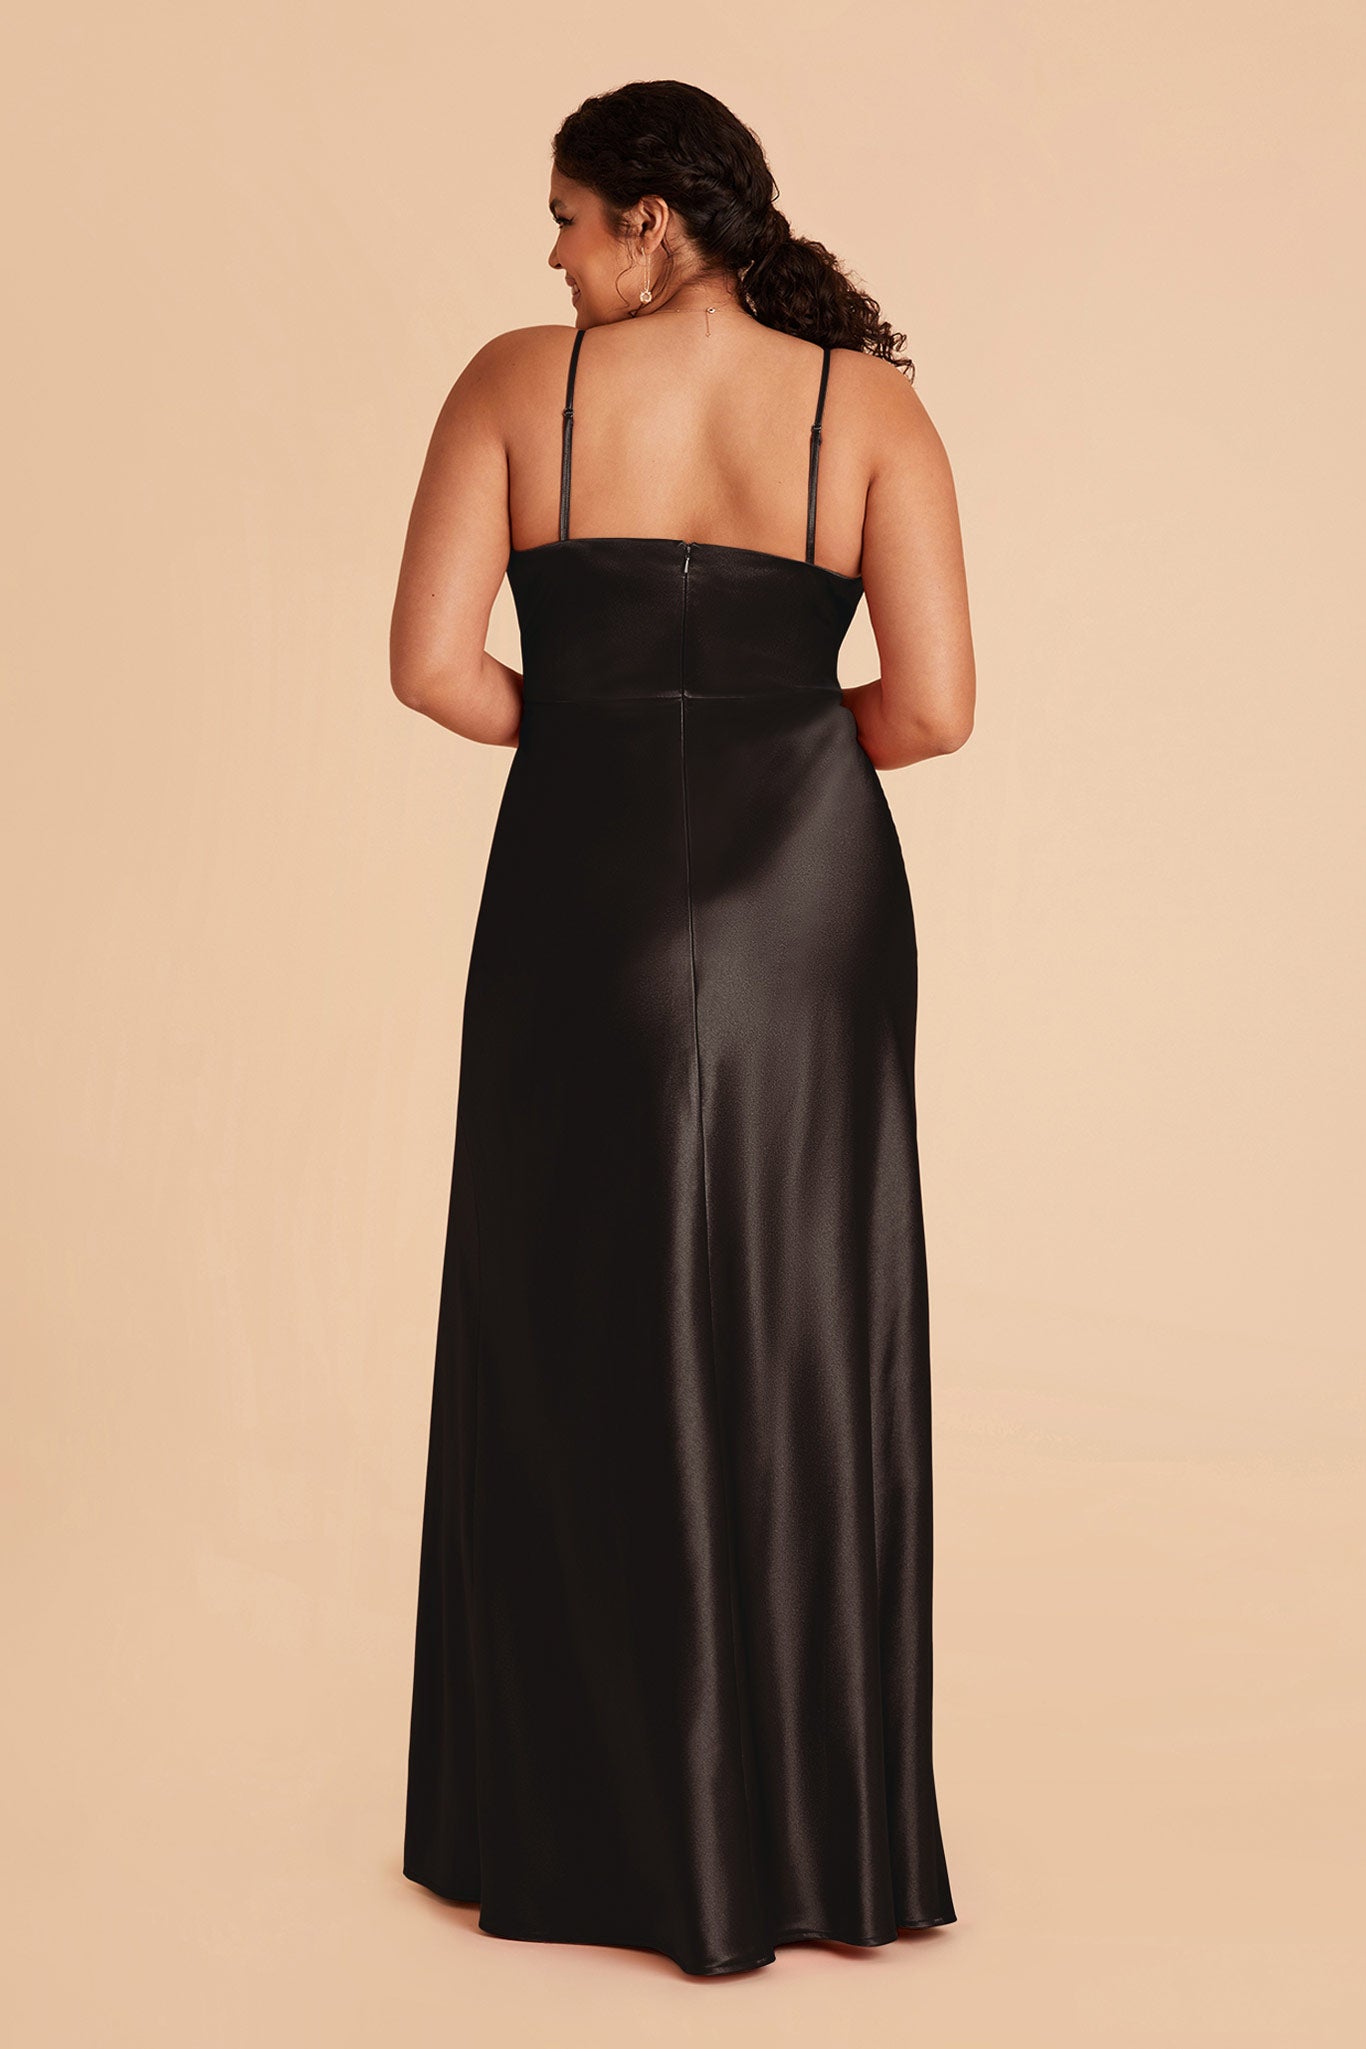 Black Mia Shiny Satin Convertible Dress by Birdy Grey